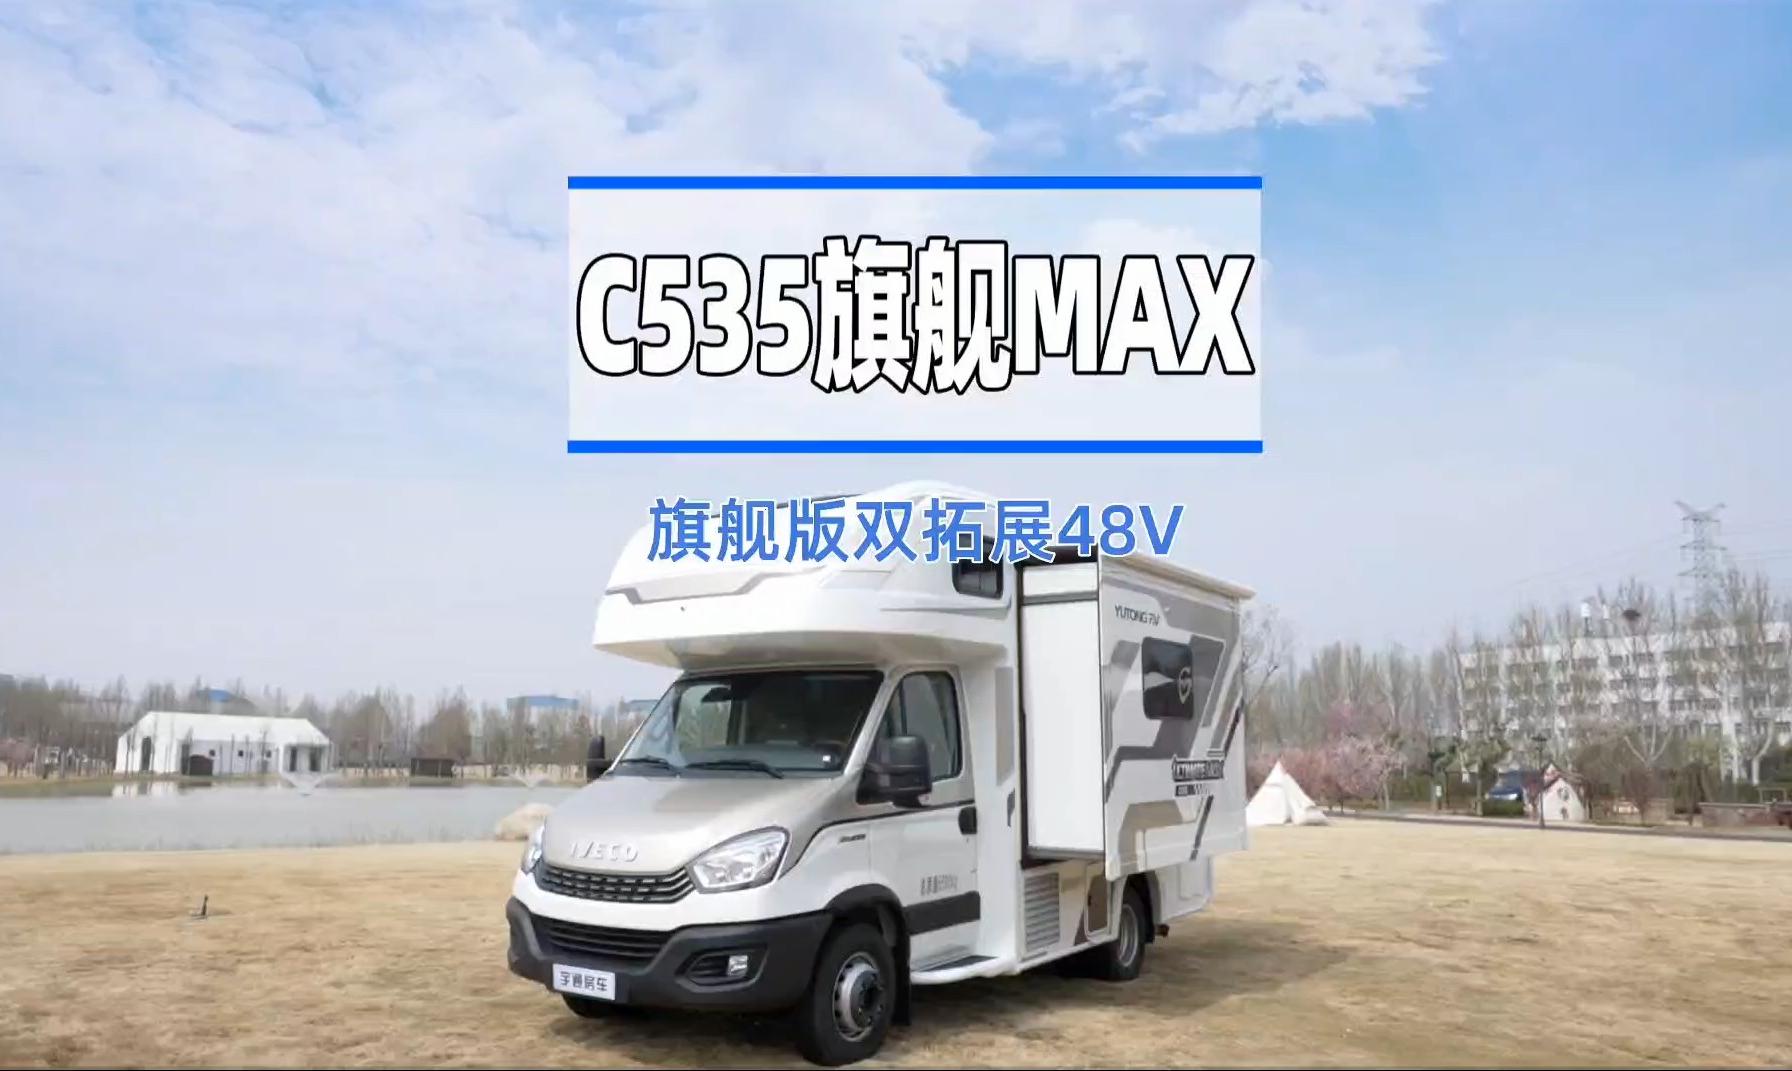 【房车产品】——宇通C535旗舰版MAX来啦